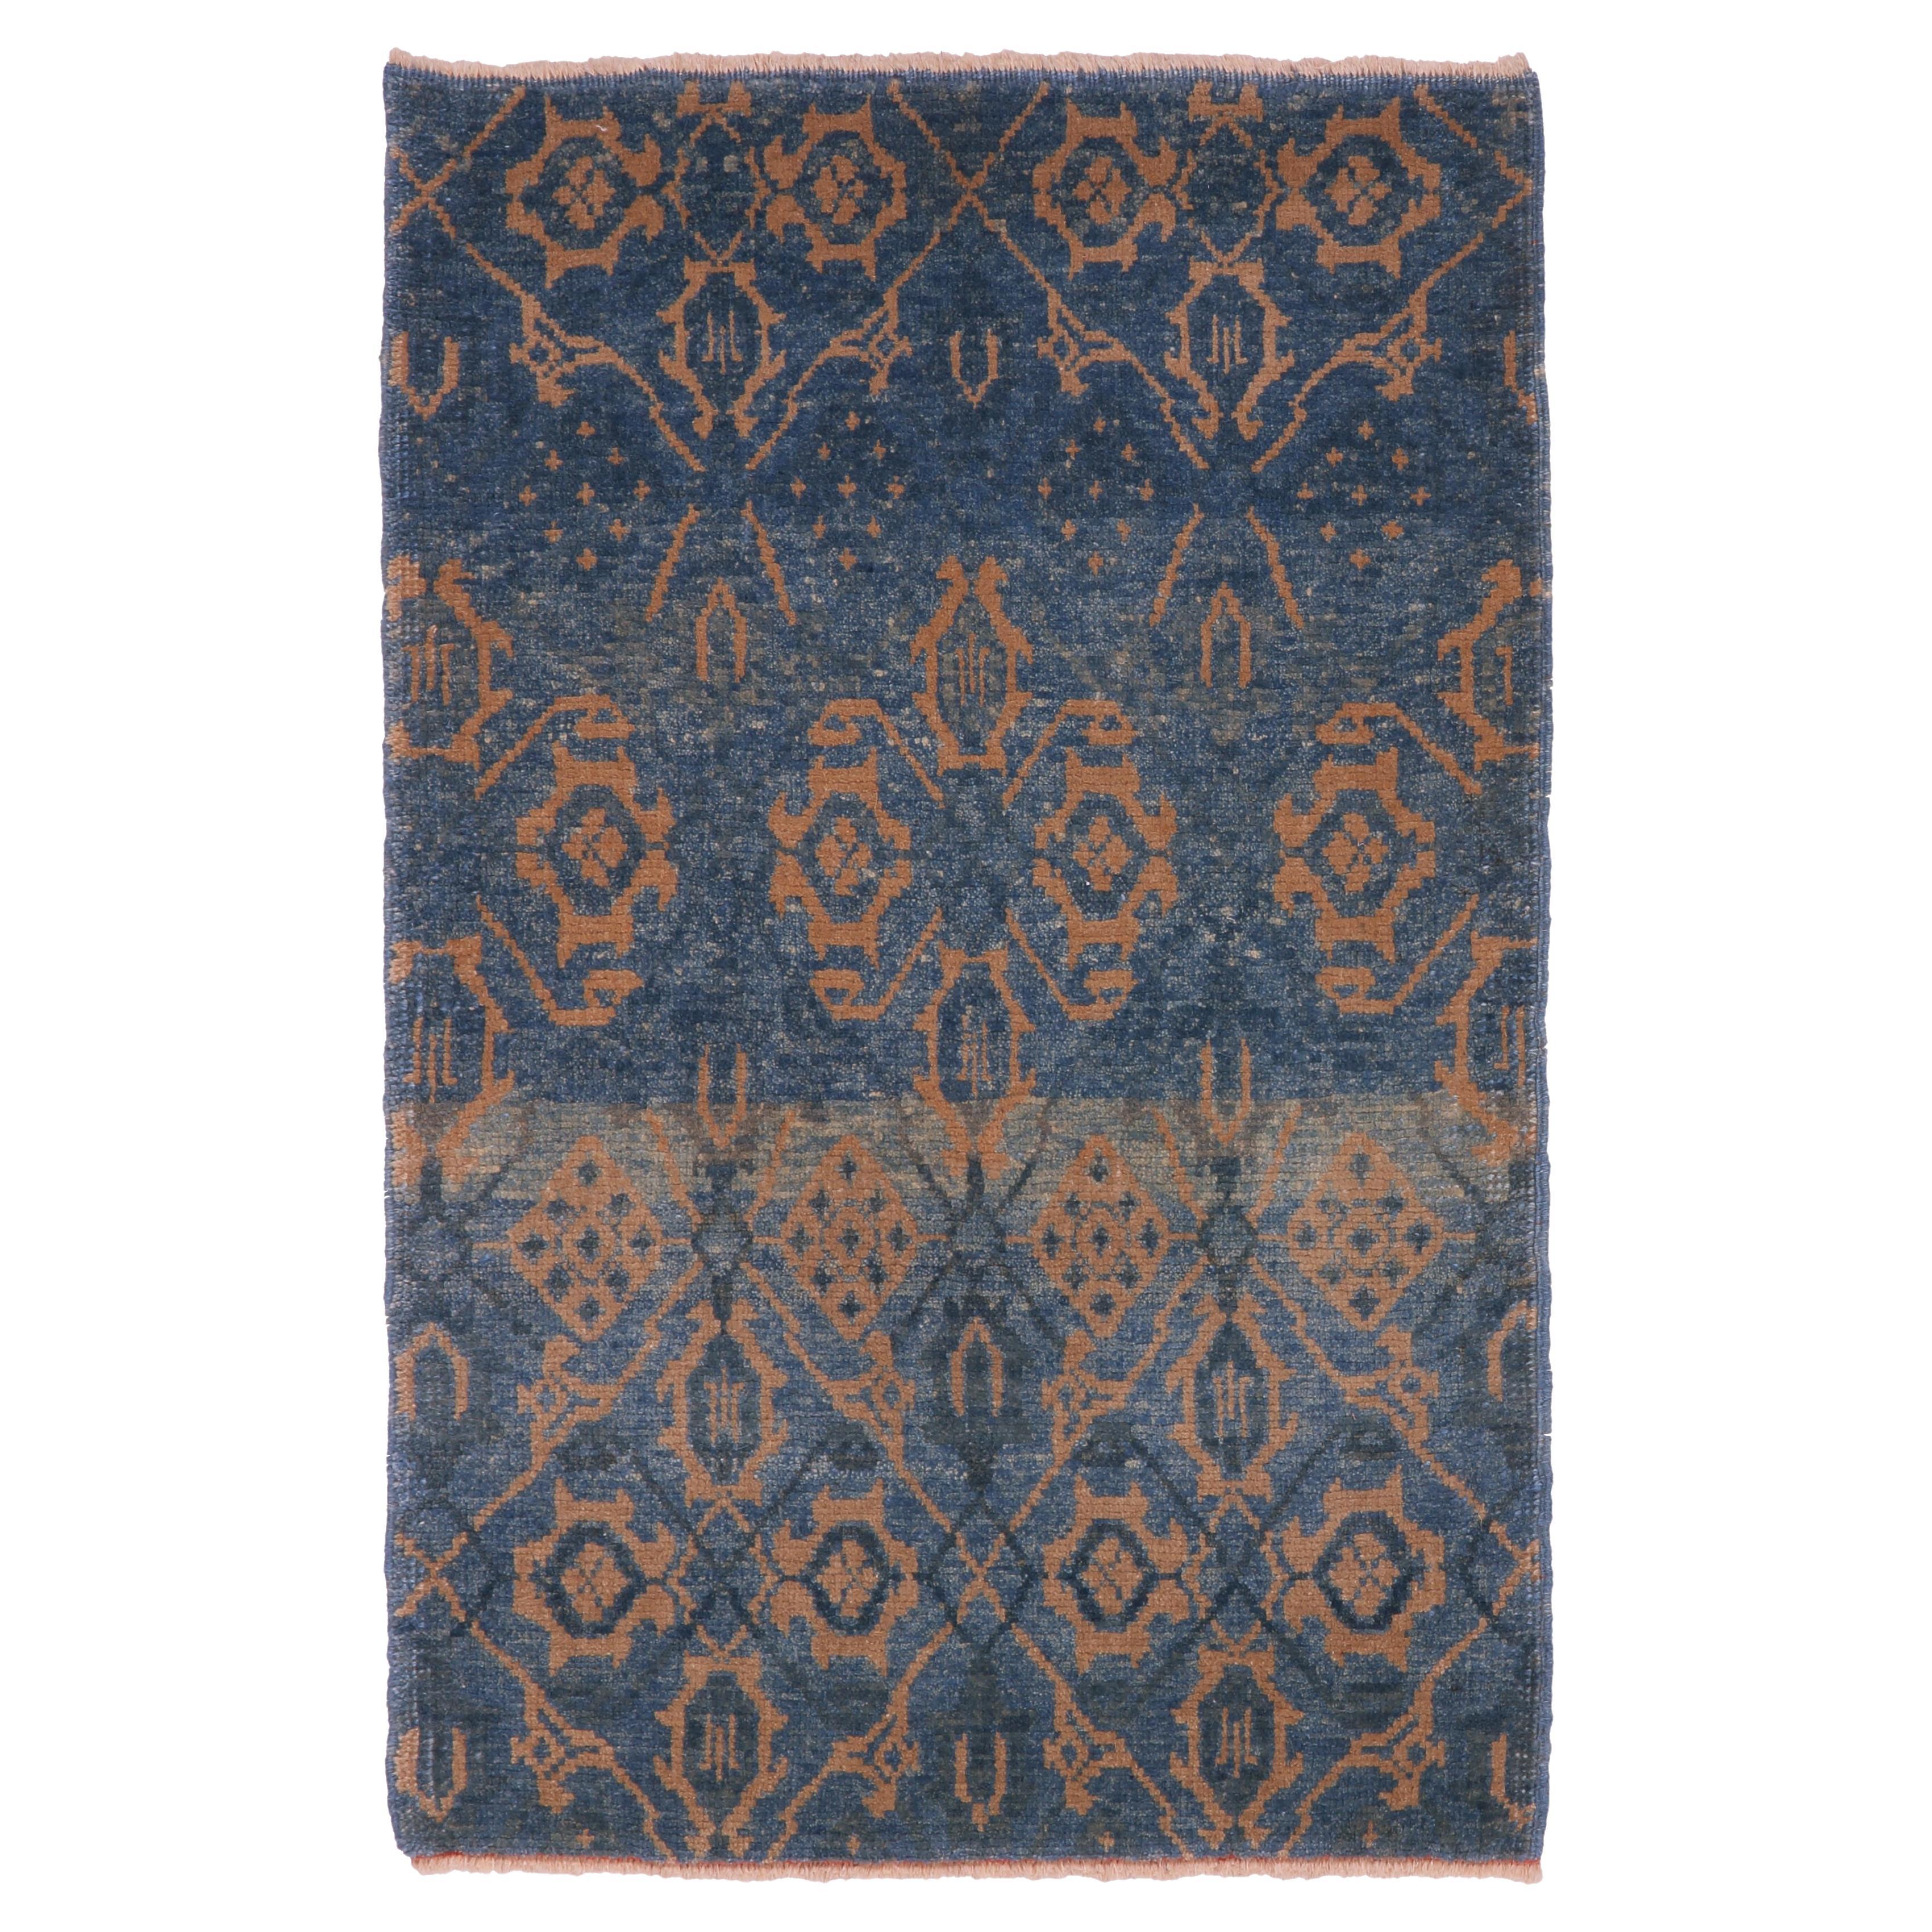 Ararat-Teppich Mamluk Wagireh Teppich Gittermuster Revival Teppich natürlich gefärbt